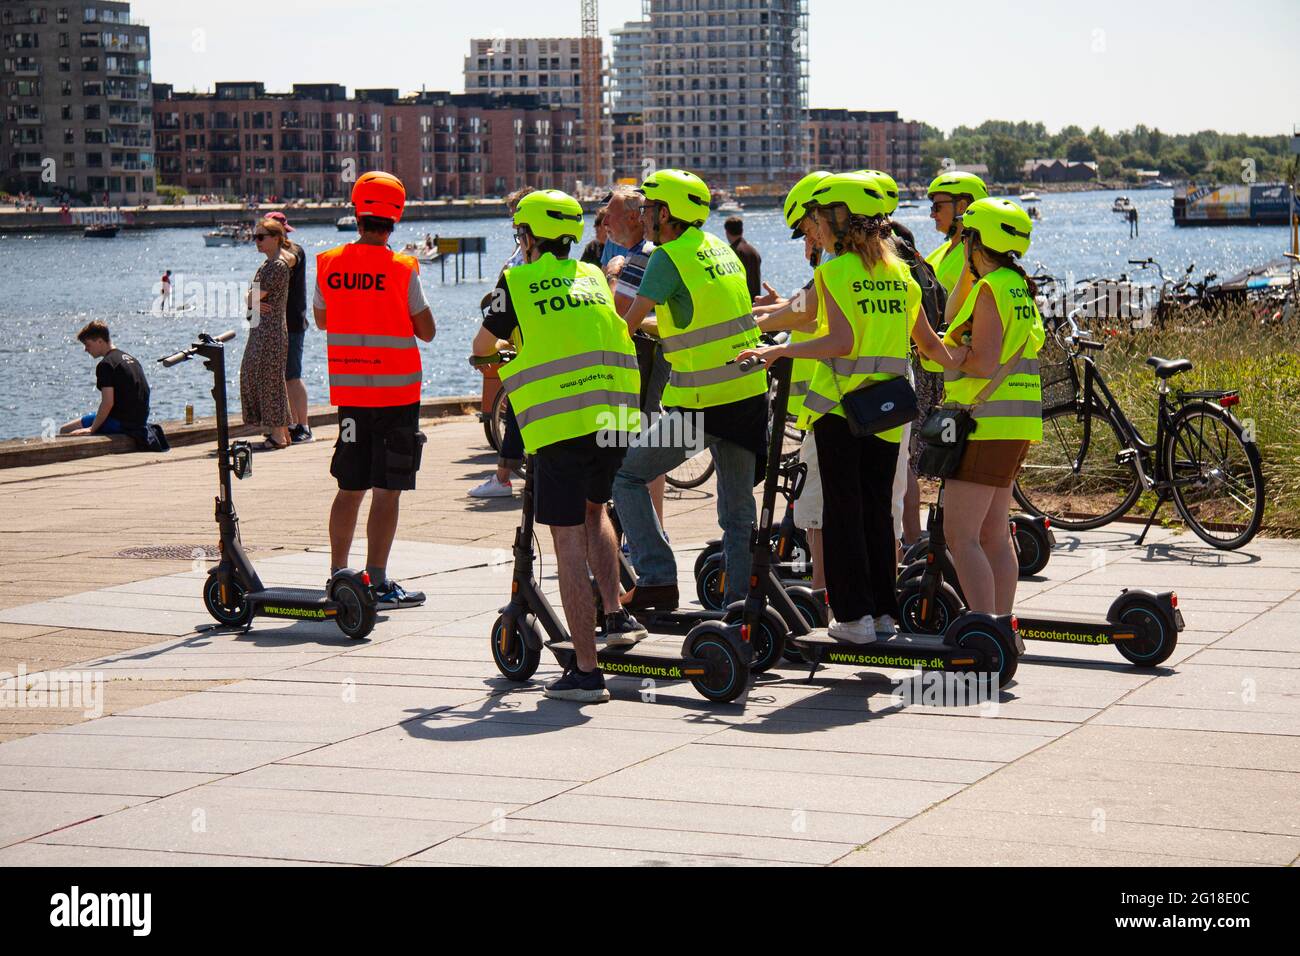 Groupe de jeunes sur la visite guidée en scooter s'arrête par un port urbain dans le soleil ensoleillé, regardant, Voyage, bâtiments. Copenhague, D. Banque D'Images